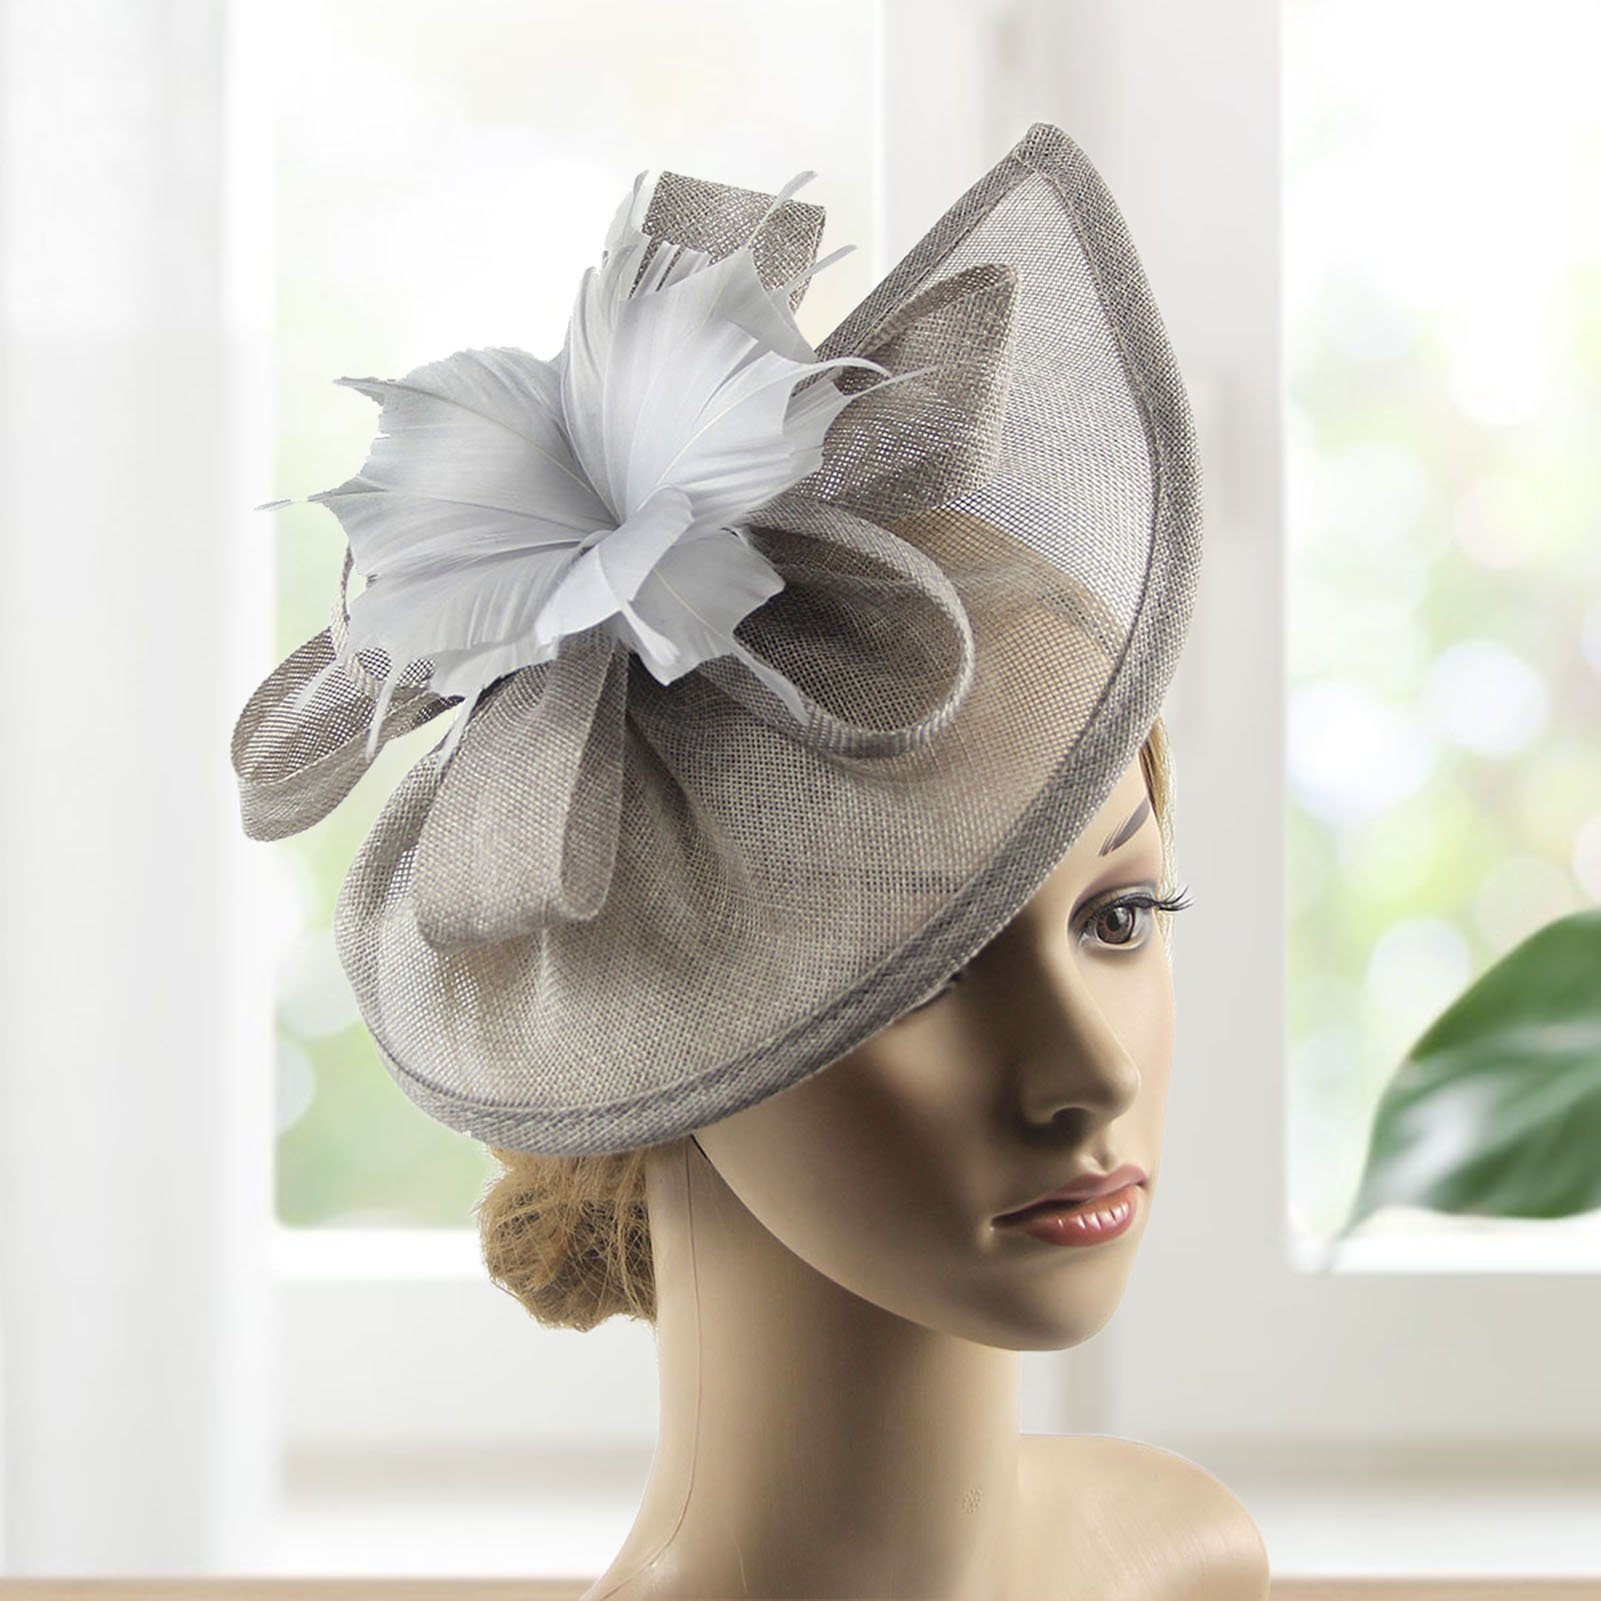 Kopfbedeckung tragbar Federn, Cocktailparty Vintage für Blume, fulaide Sommerhut,Blume Frauen Mesh 3 Trachtenhut